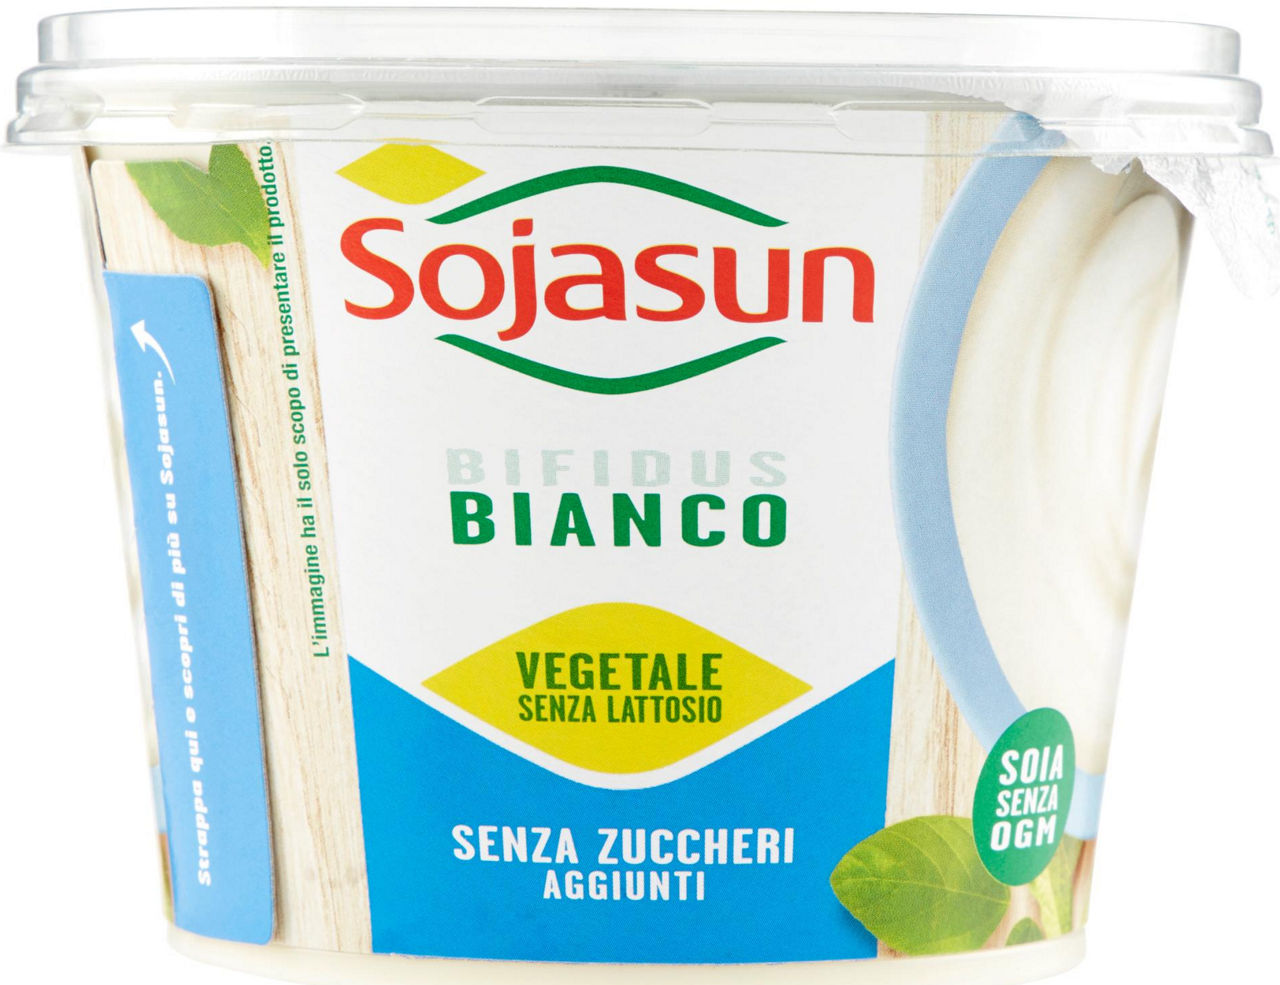 Sojasun bifidus bianco naturale con calcio senza zucchero barattolo g 250